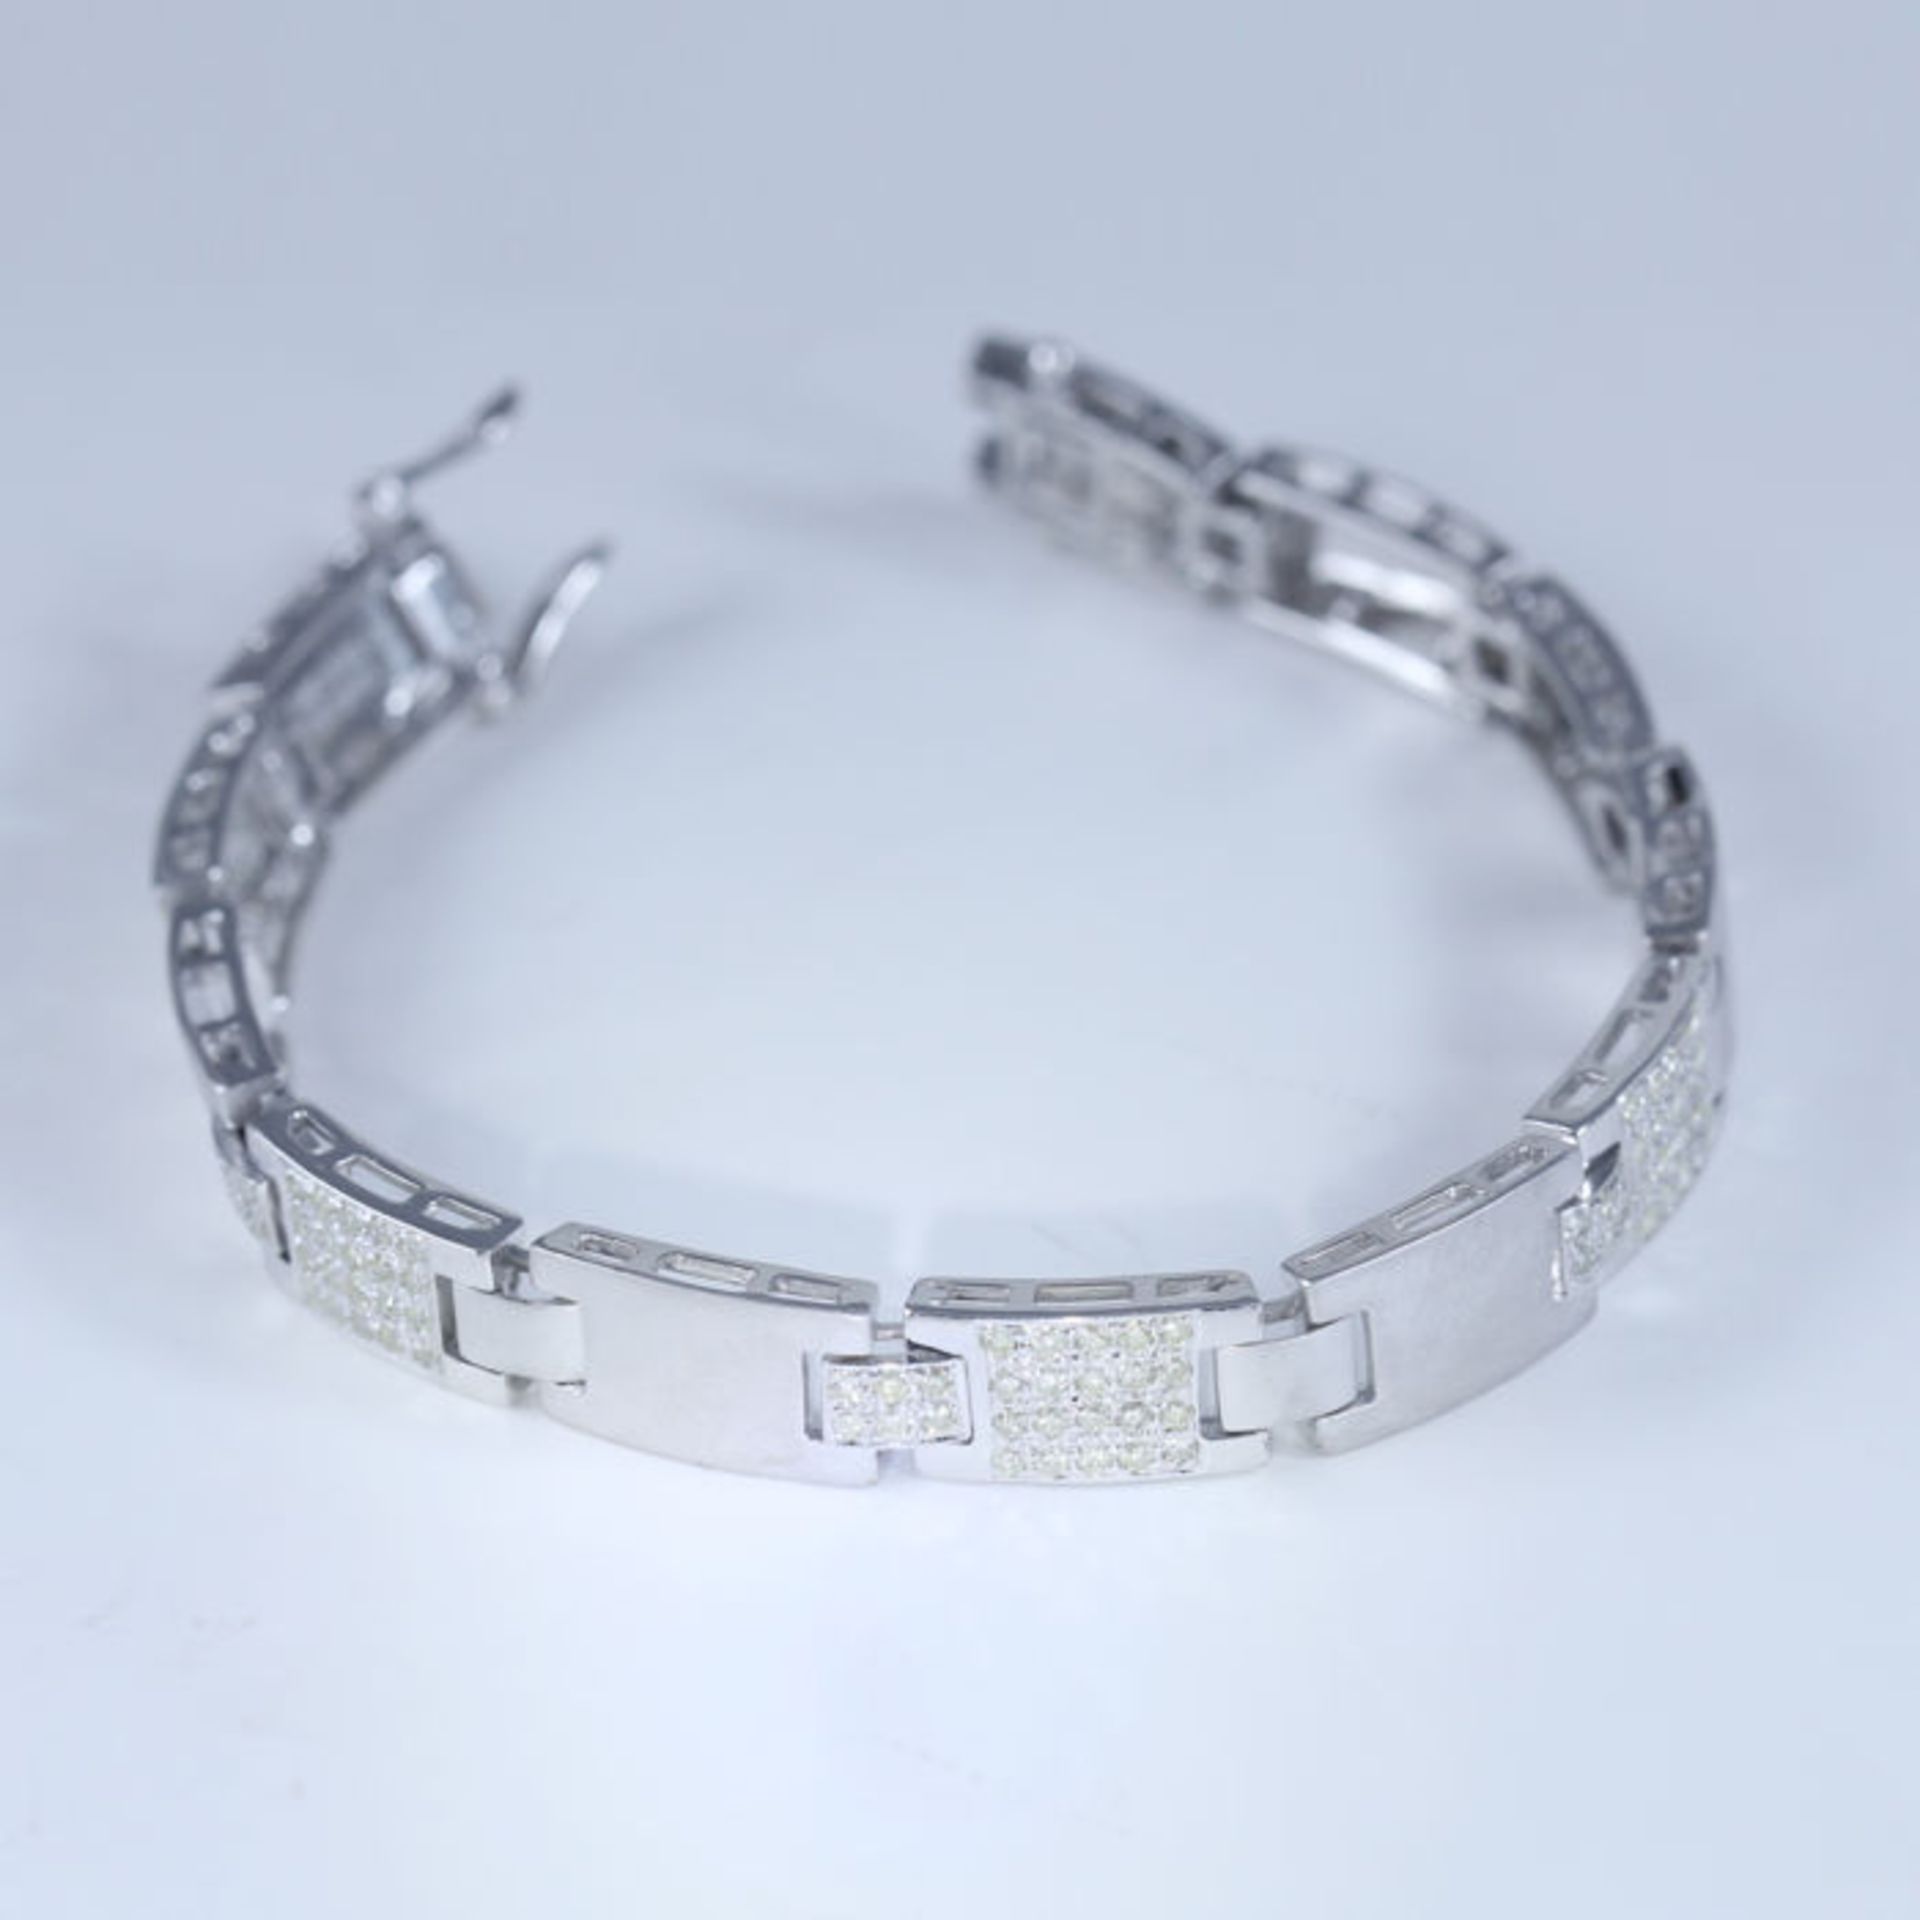 14 K / 585 White Gold Men's Diamond Bracelet - Image 6 of 7